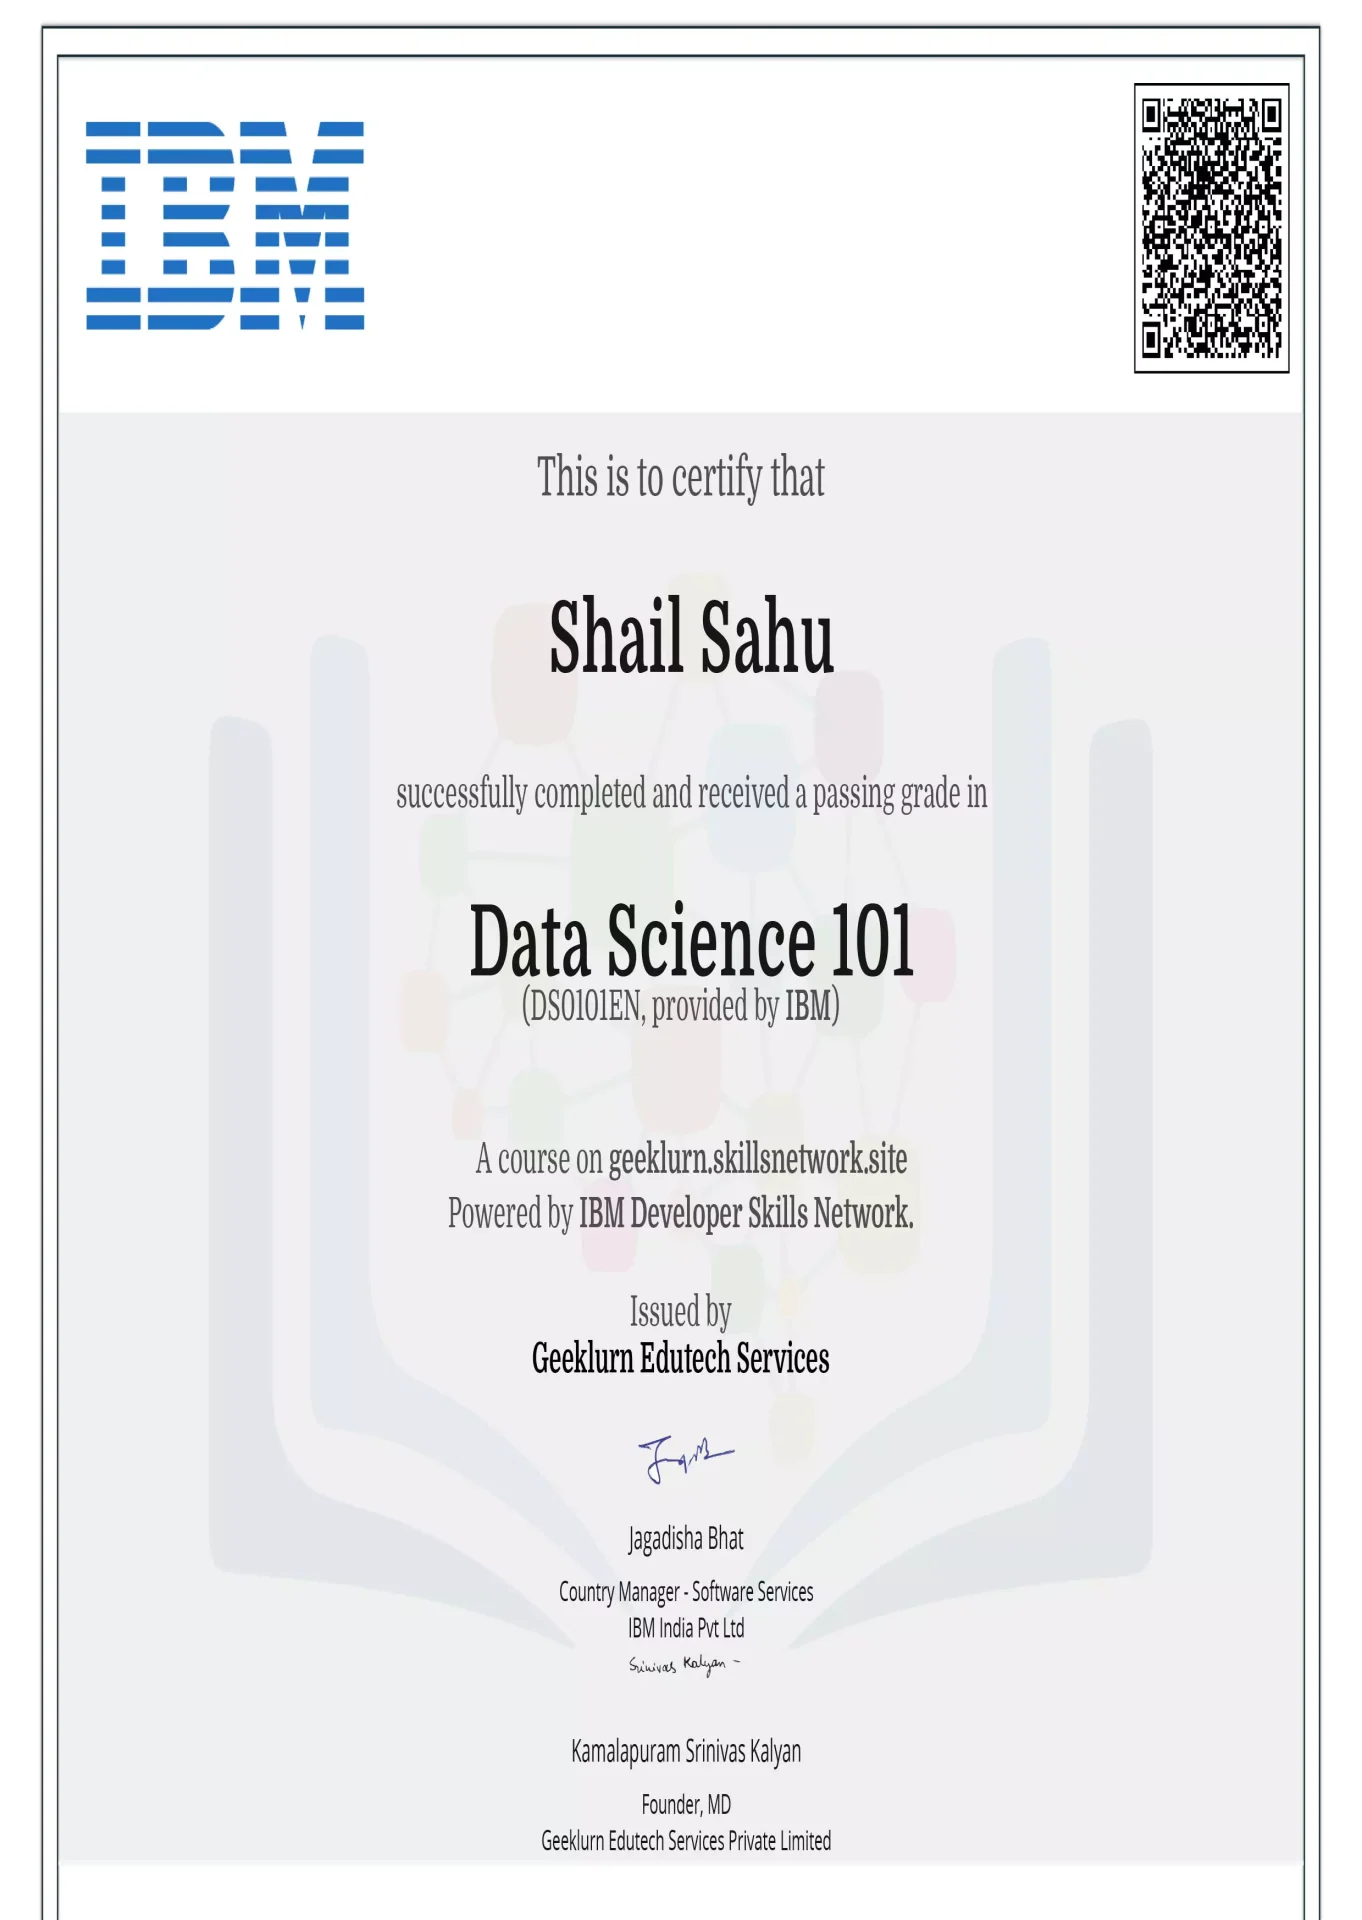 ibm-ds0101en-certificate-geeklurn-edutech-services-7